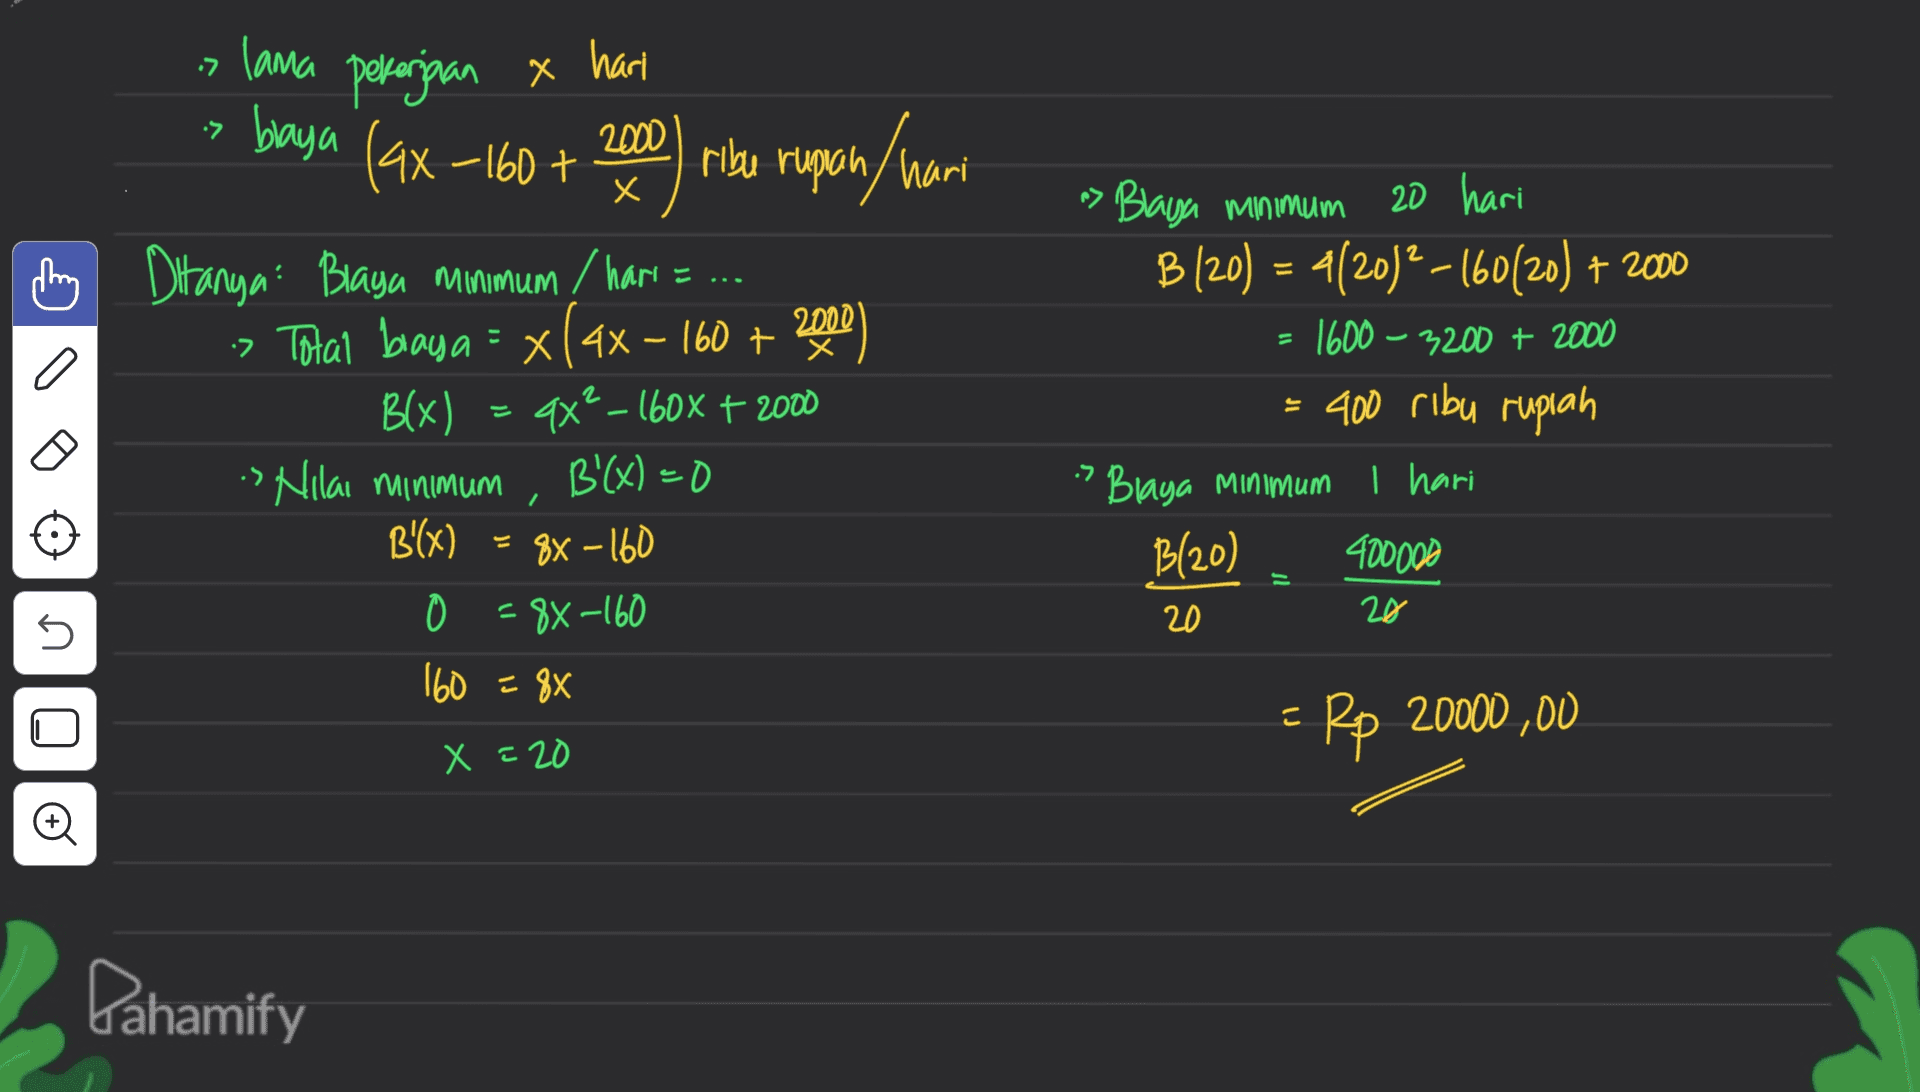 7. lama pekerjaan & harl х ל• baya (ax-160 + 2000 ribu rupiah rupan / hari х = Ditanya: Braya minimum / hari = ... :Total baya = x(ax - 160 + 2000) Blx) ax? – 160x + 2000 s Nilai minimum B'(x) = 0 B'(x) 88 - 160 0 = 8x-160 160 = 88 n> Blaya minimum 20 hari B (20) = 4(2012-16020) + 2000 1600 – 3200 + 2000 = 400 ribu rupiah » Blaya Minimum I hari B(20) 400000 ל. - 20 20 E no o Rp 20000 ,00 X = 20 Pahamify 